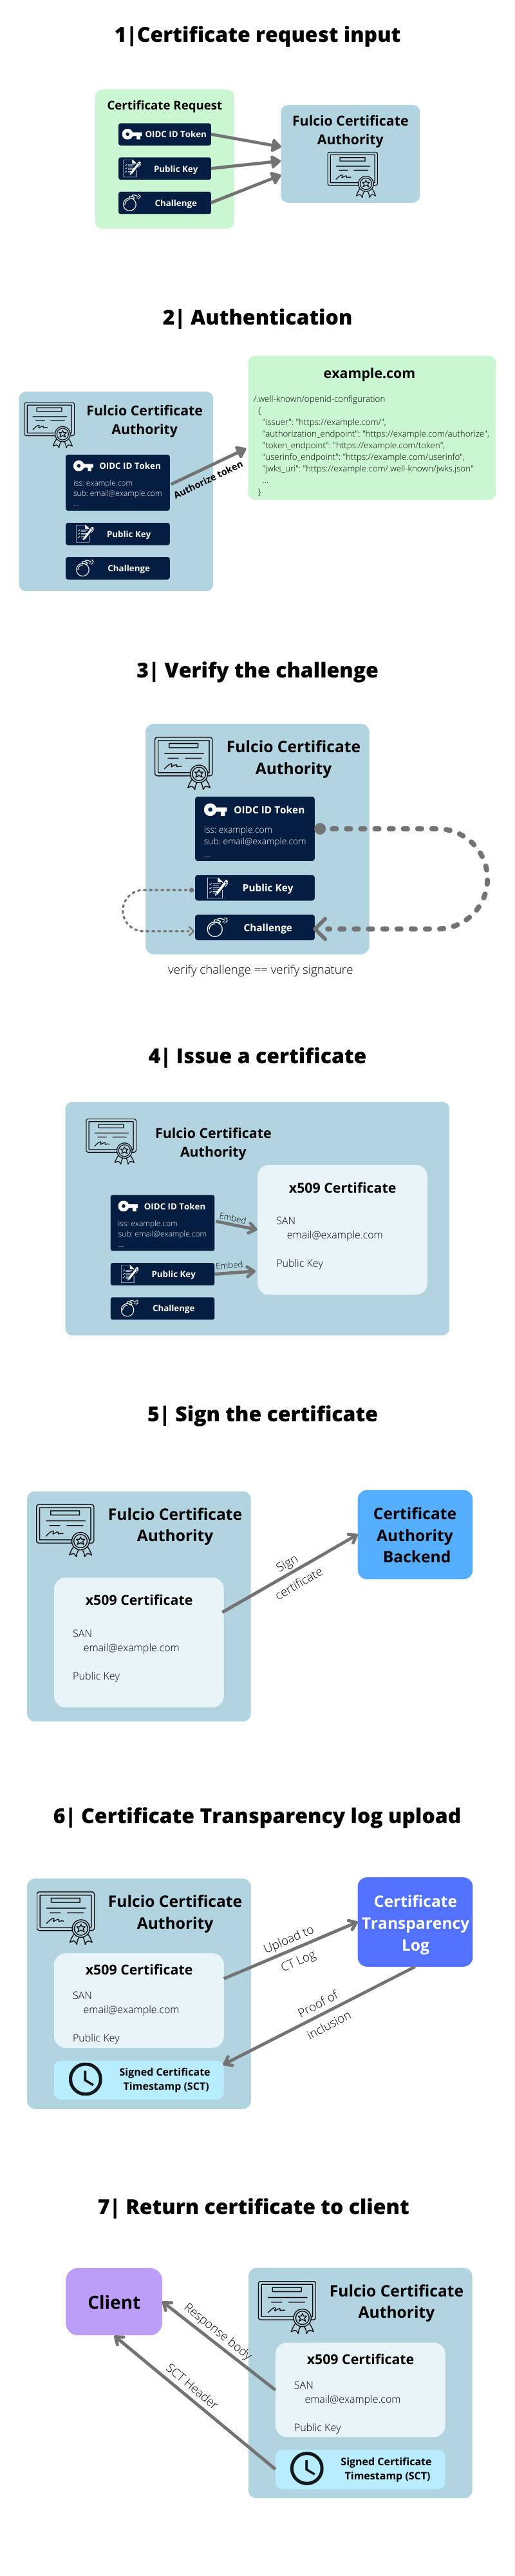 Fulcio Certificate Authority